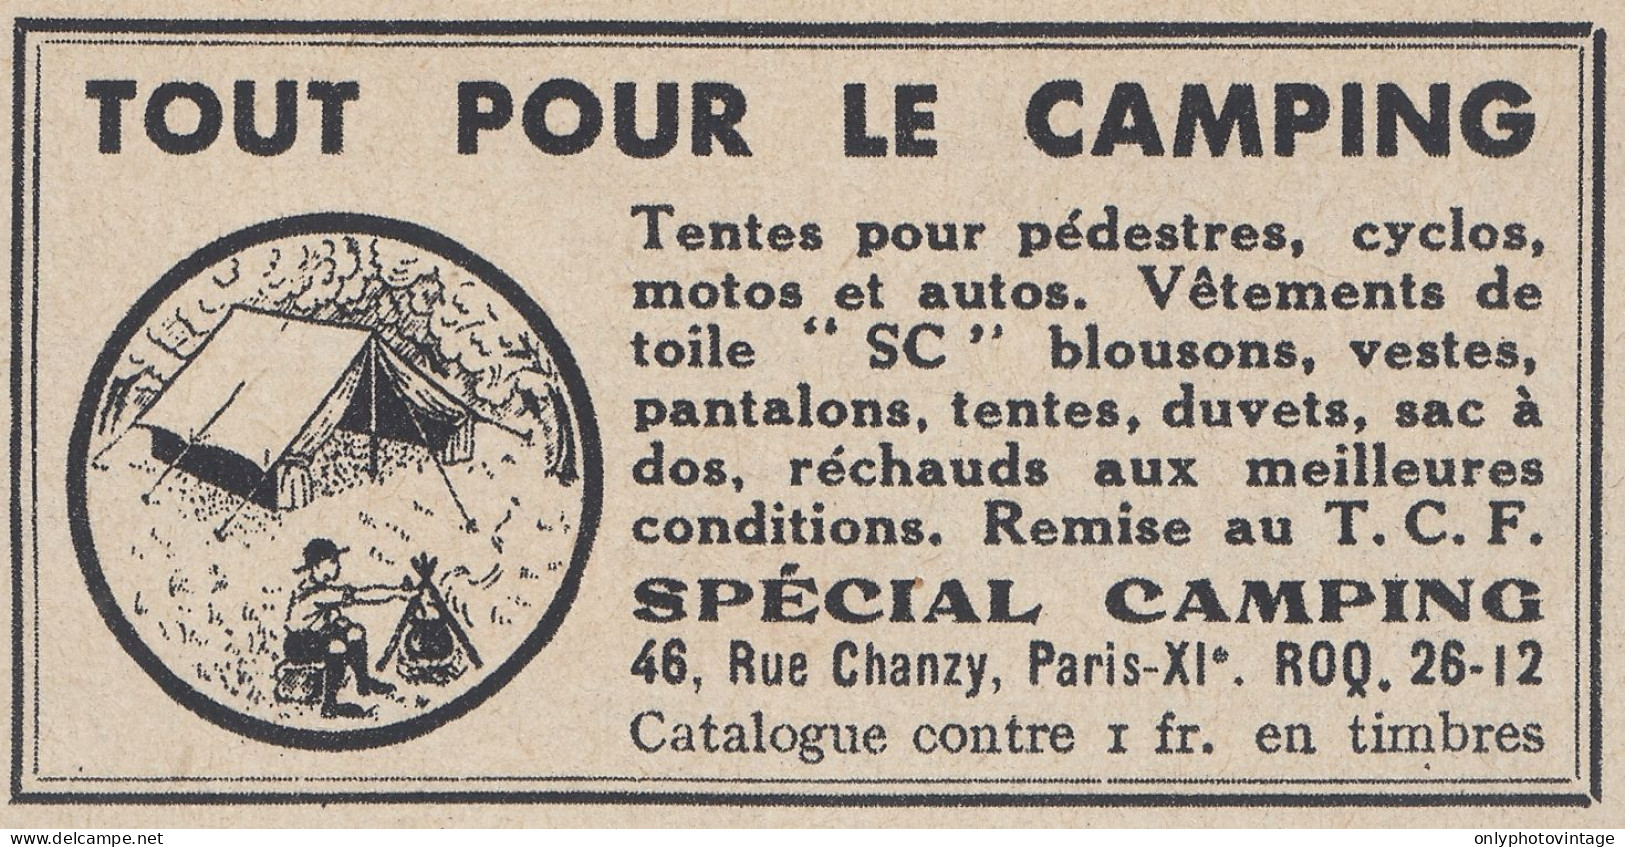 Sp�cial Camping - Paris - 1938 Vintage Advertising - Pubblicit� Epoca - Publicidad